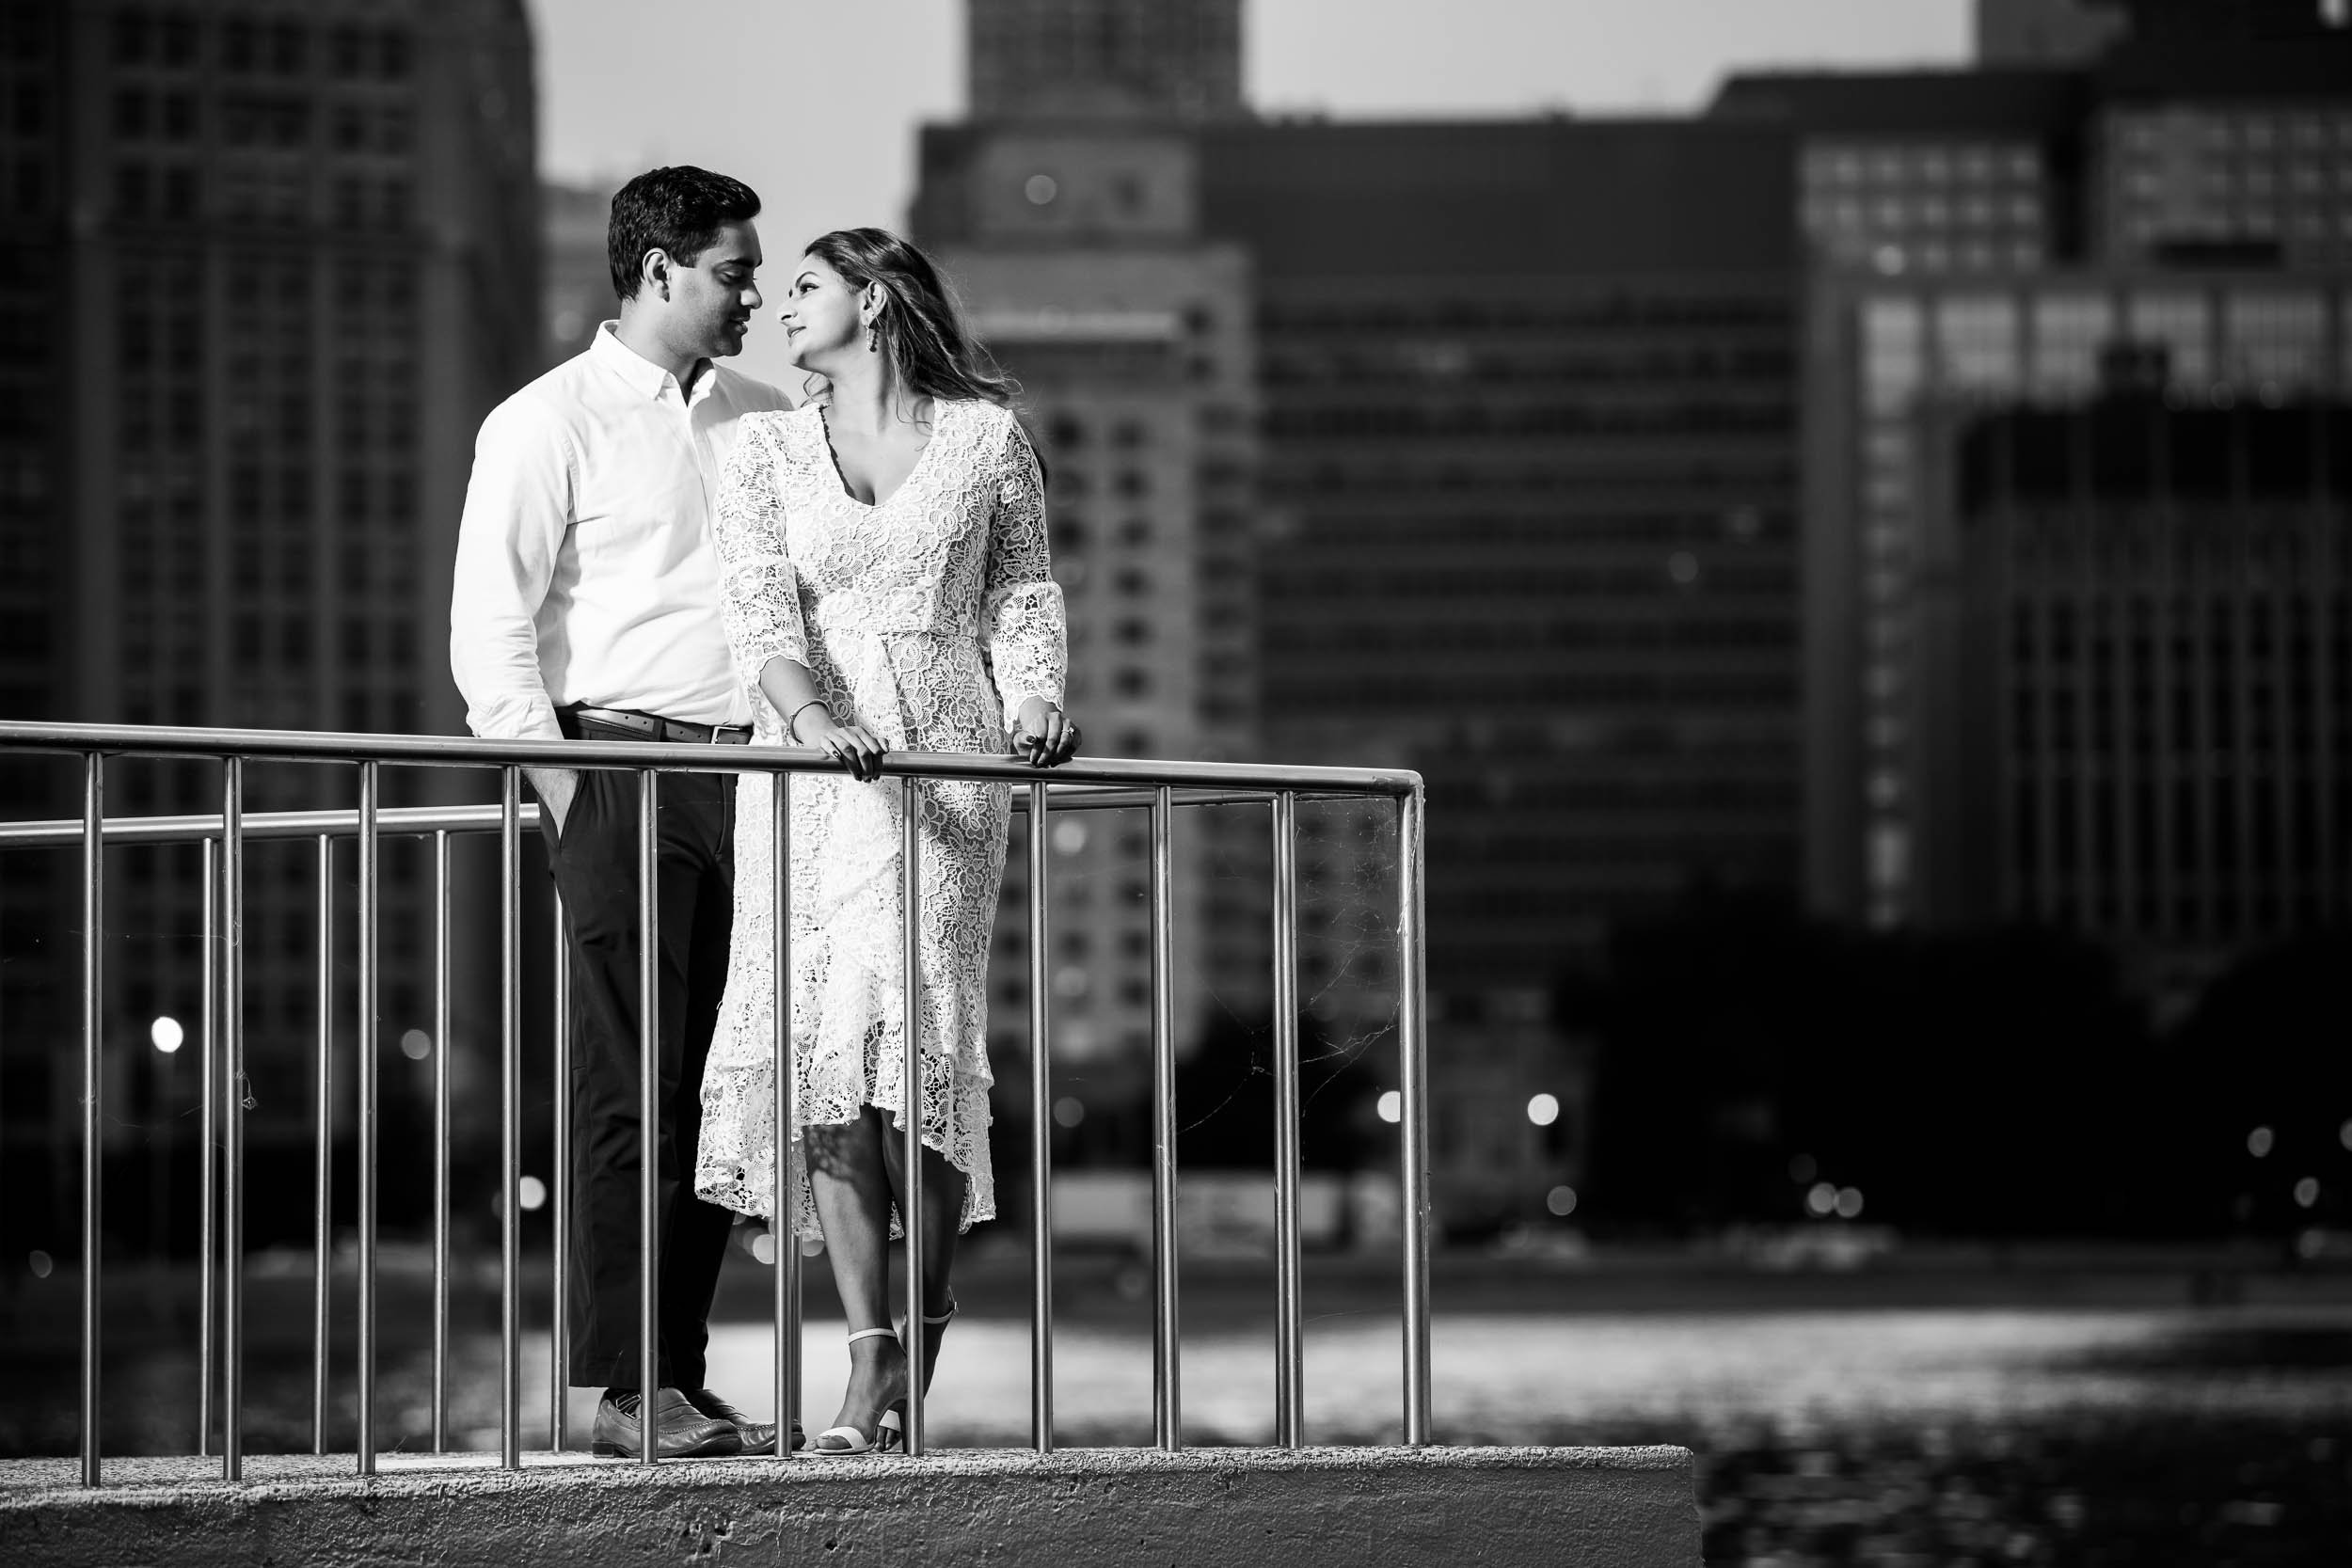 Milton Olive Park | Romantic Skyline Engagement Portrait | Chicago IL